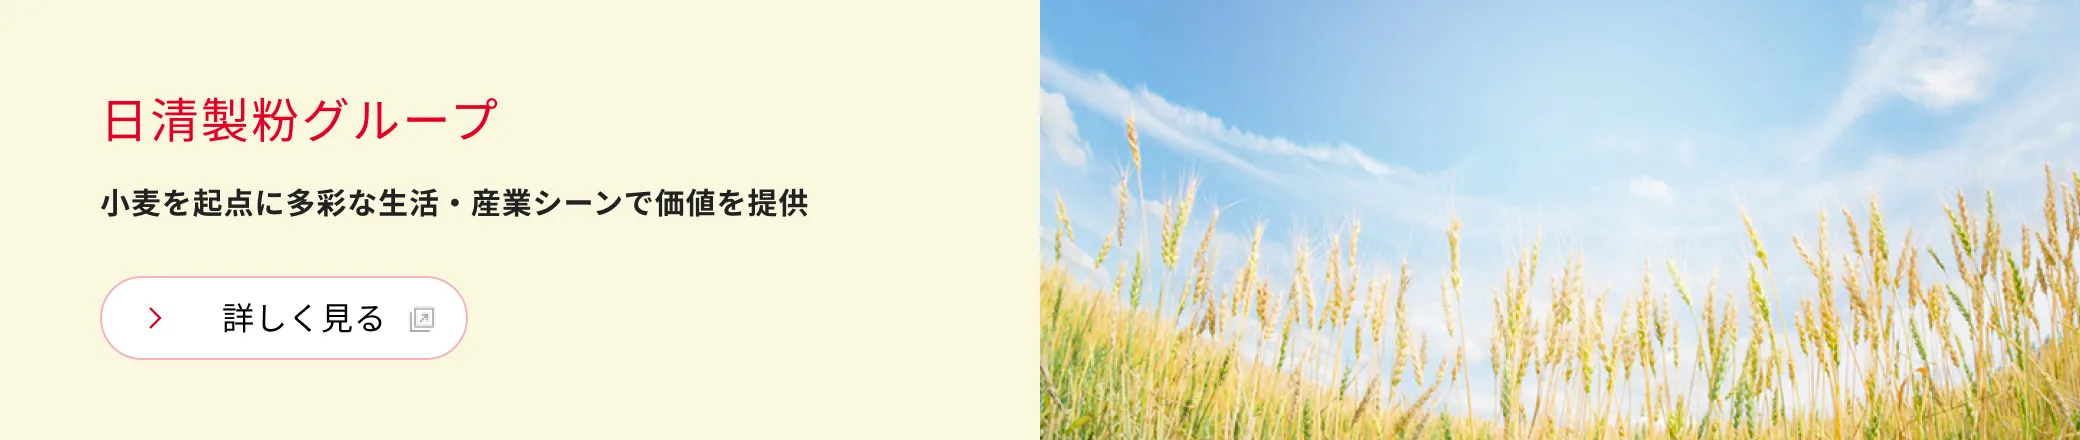 日清製粉グループ 小麦を起点に多彩な生活・産業シーンで価値を提供 詳しく見る